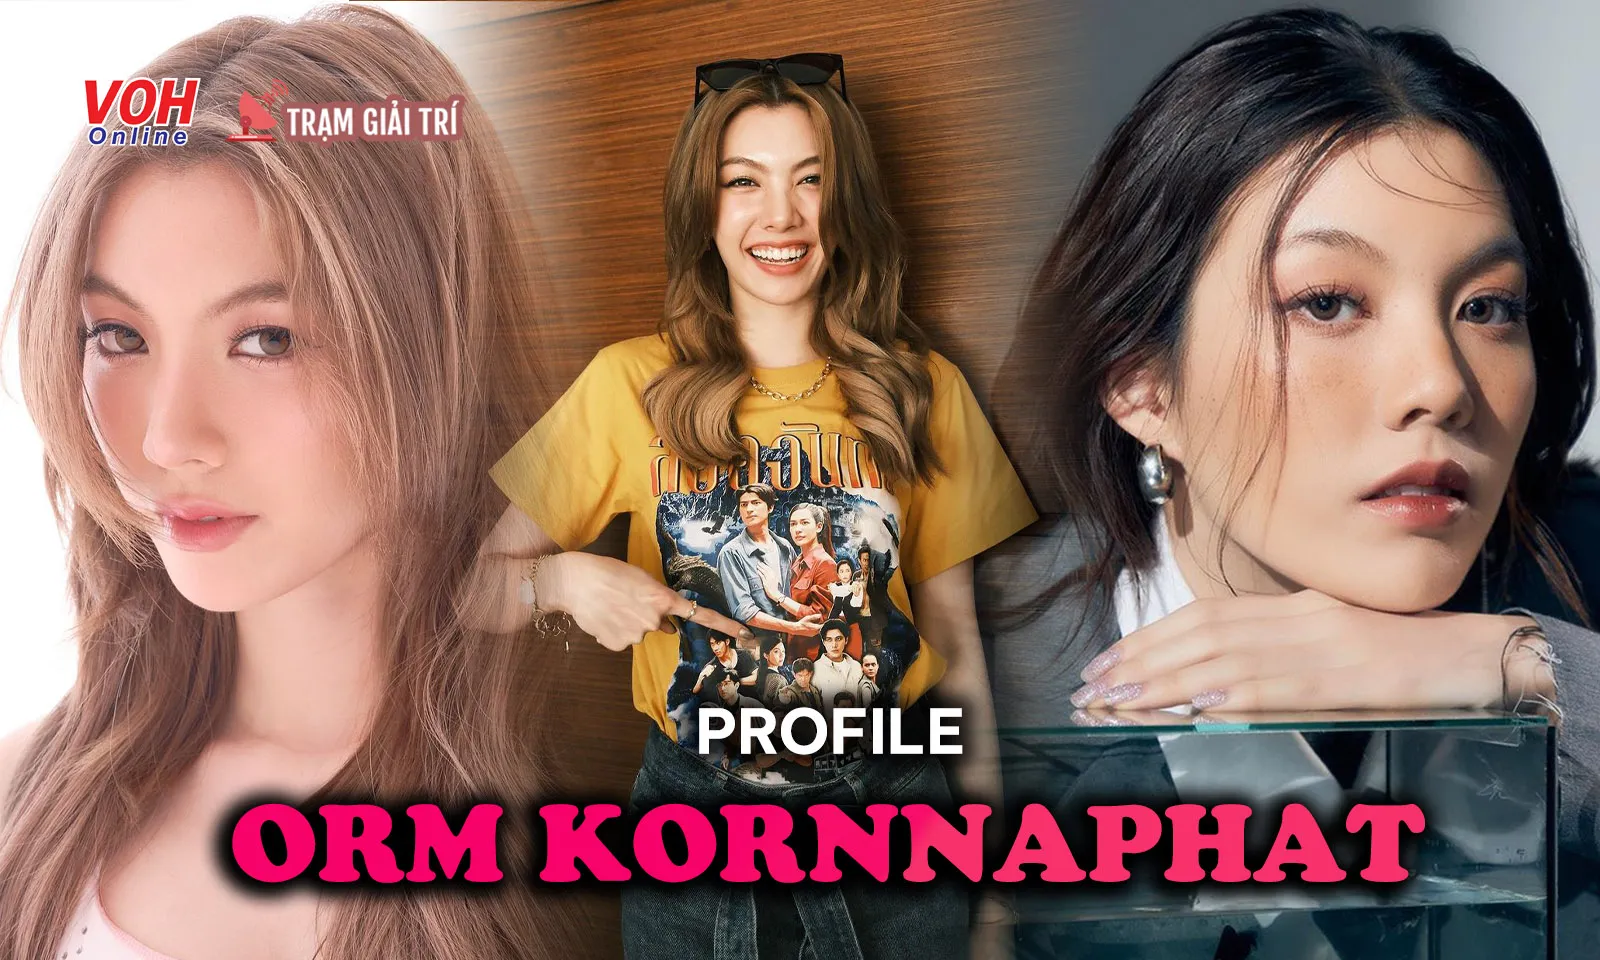 Profile Orm Kornnaphat: con nhà nòi vươn lên bằng thực lực